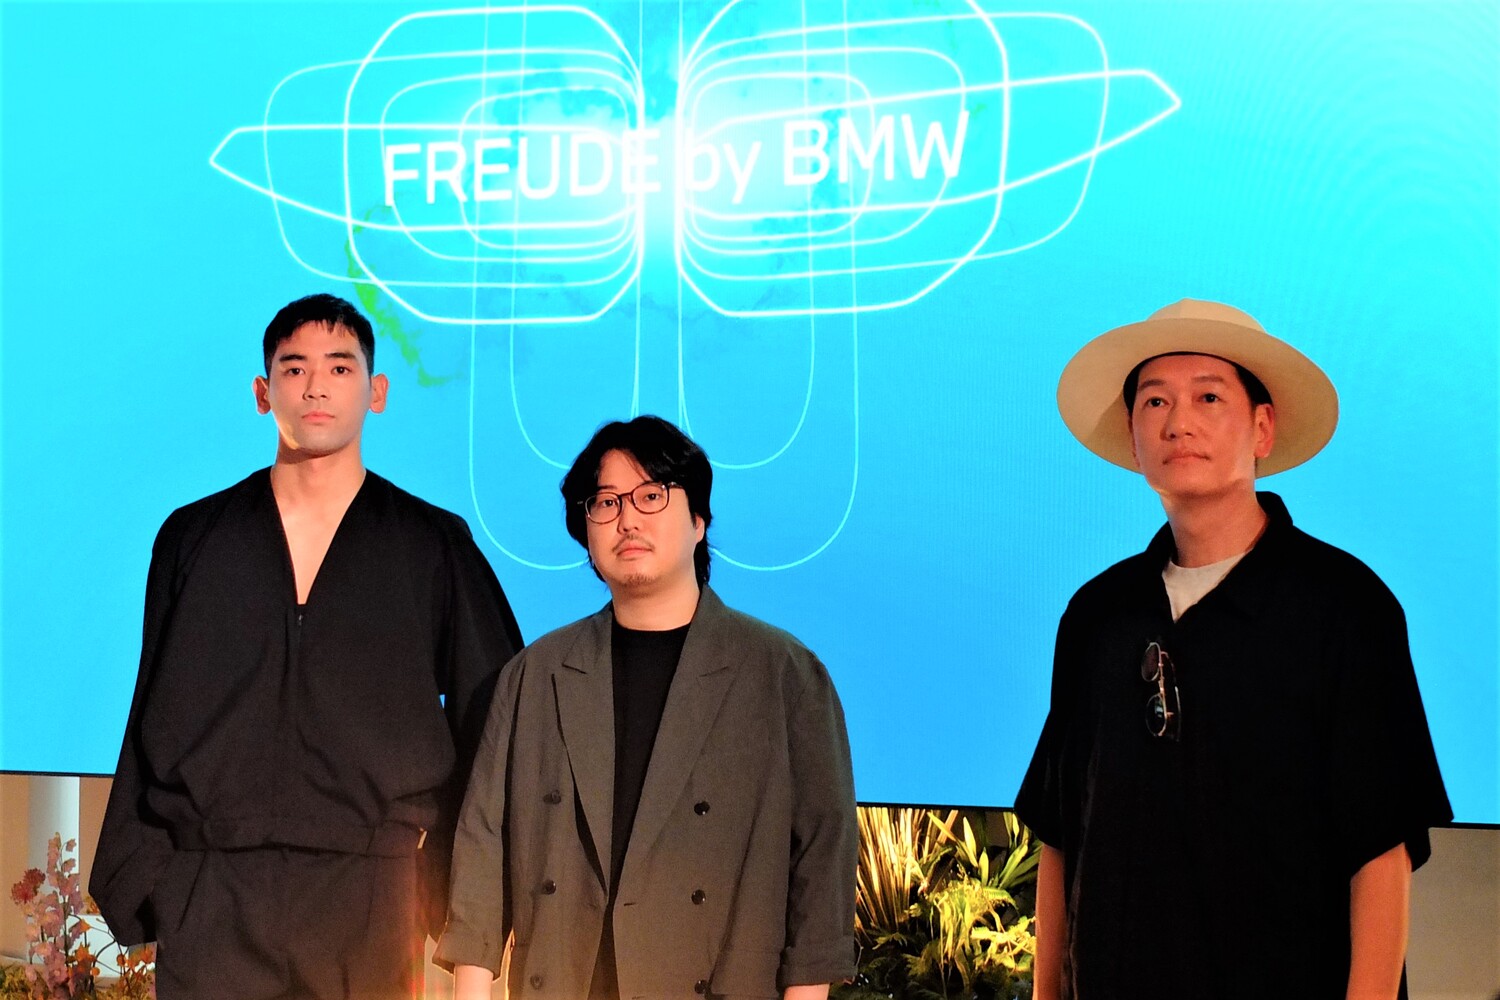 BMWブランドフレンドを務める3人　左からモデルのUTA、演奏家の反田恭平、俳優の井浦新